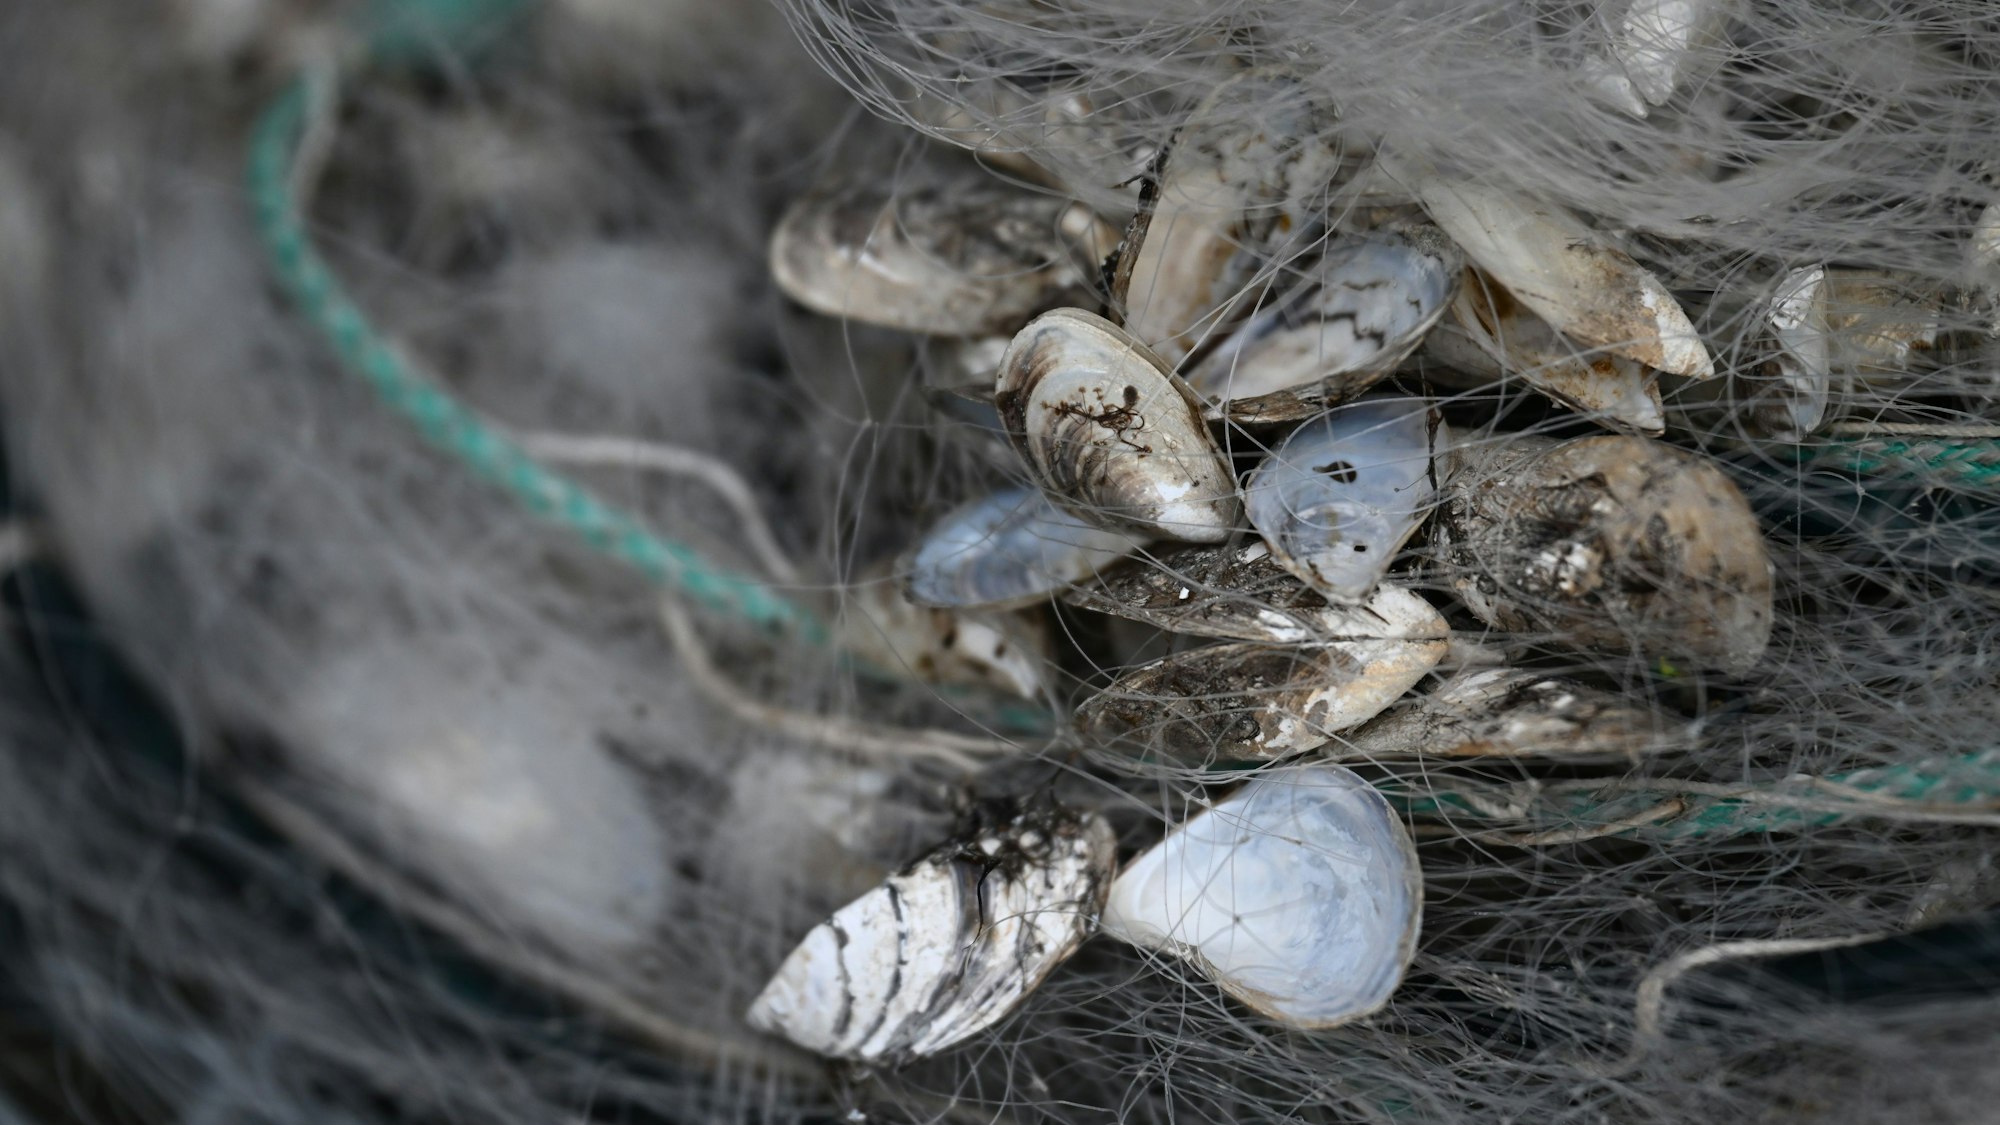 Quagga-Muscheln hängen in einem Fischernetz am Bodensee fest. Die invasive Art breitet sich in Deutschland rasant.